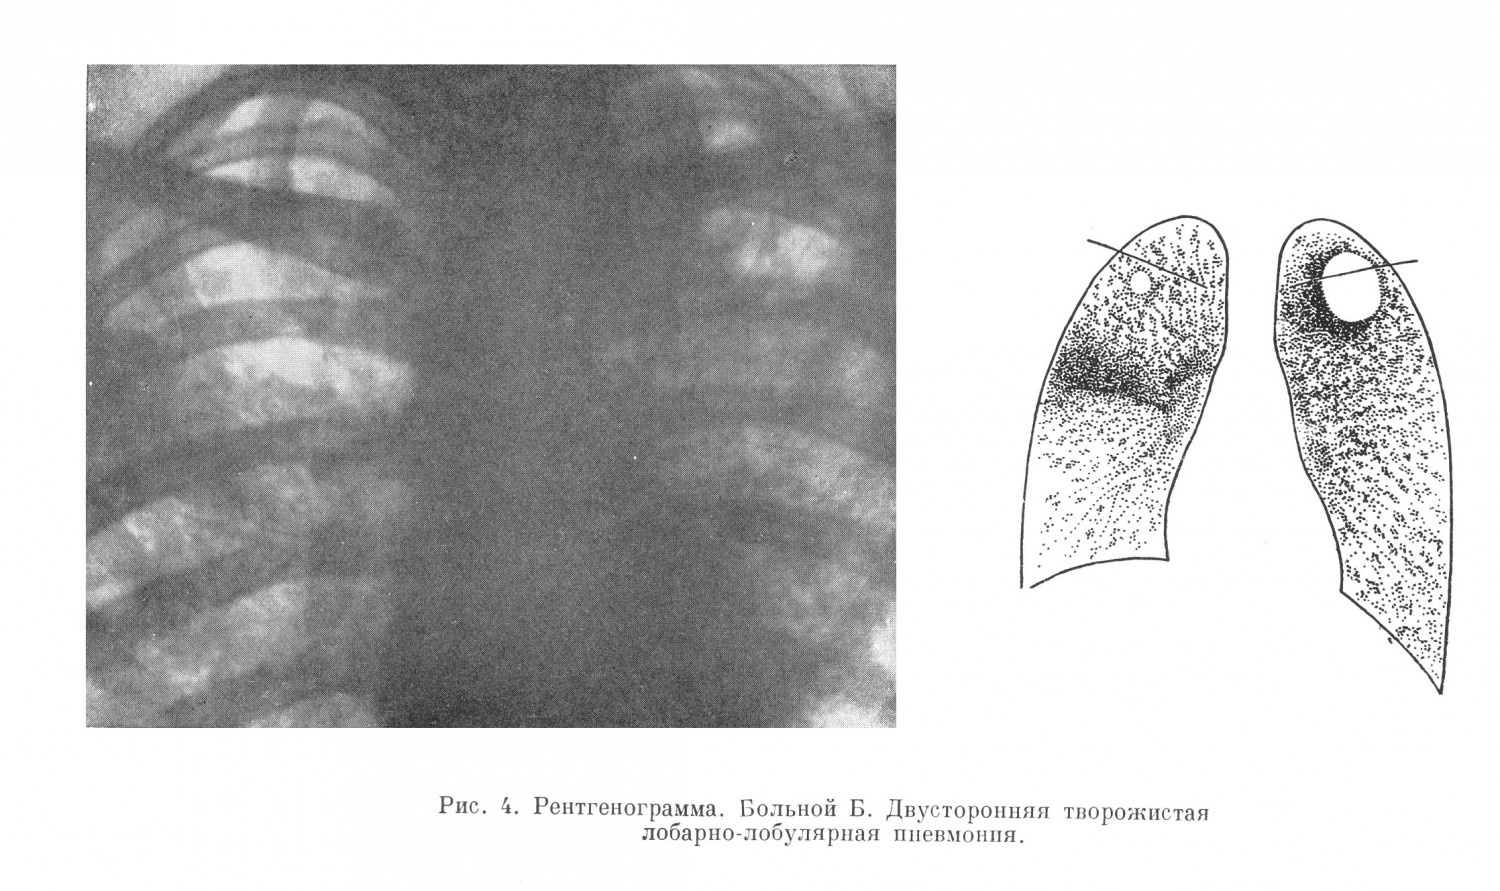 при рентгеноскопии была диагносцирована двусторонняя лобарно-лобулярная творожистая пневмония